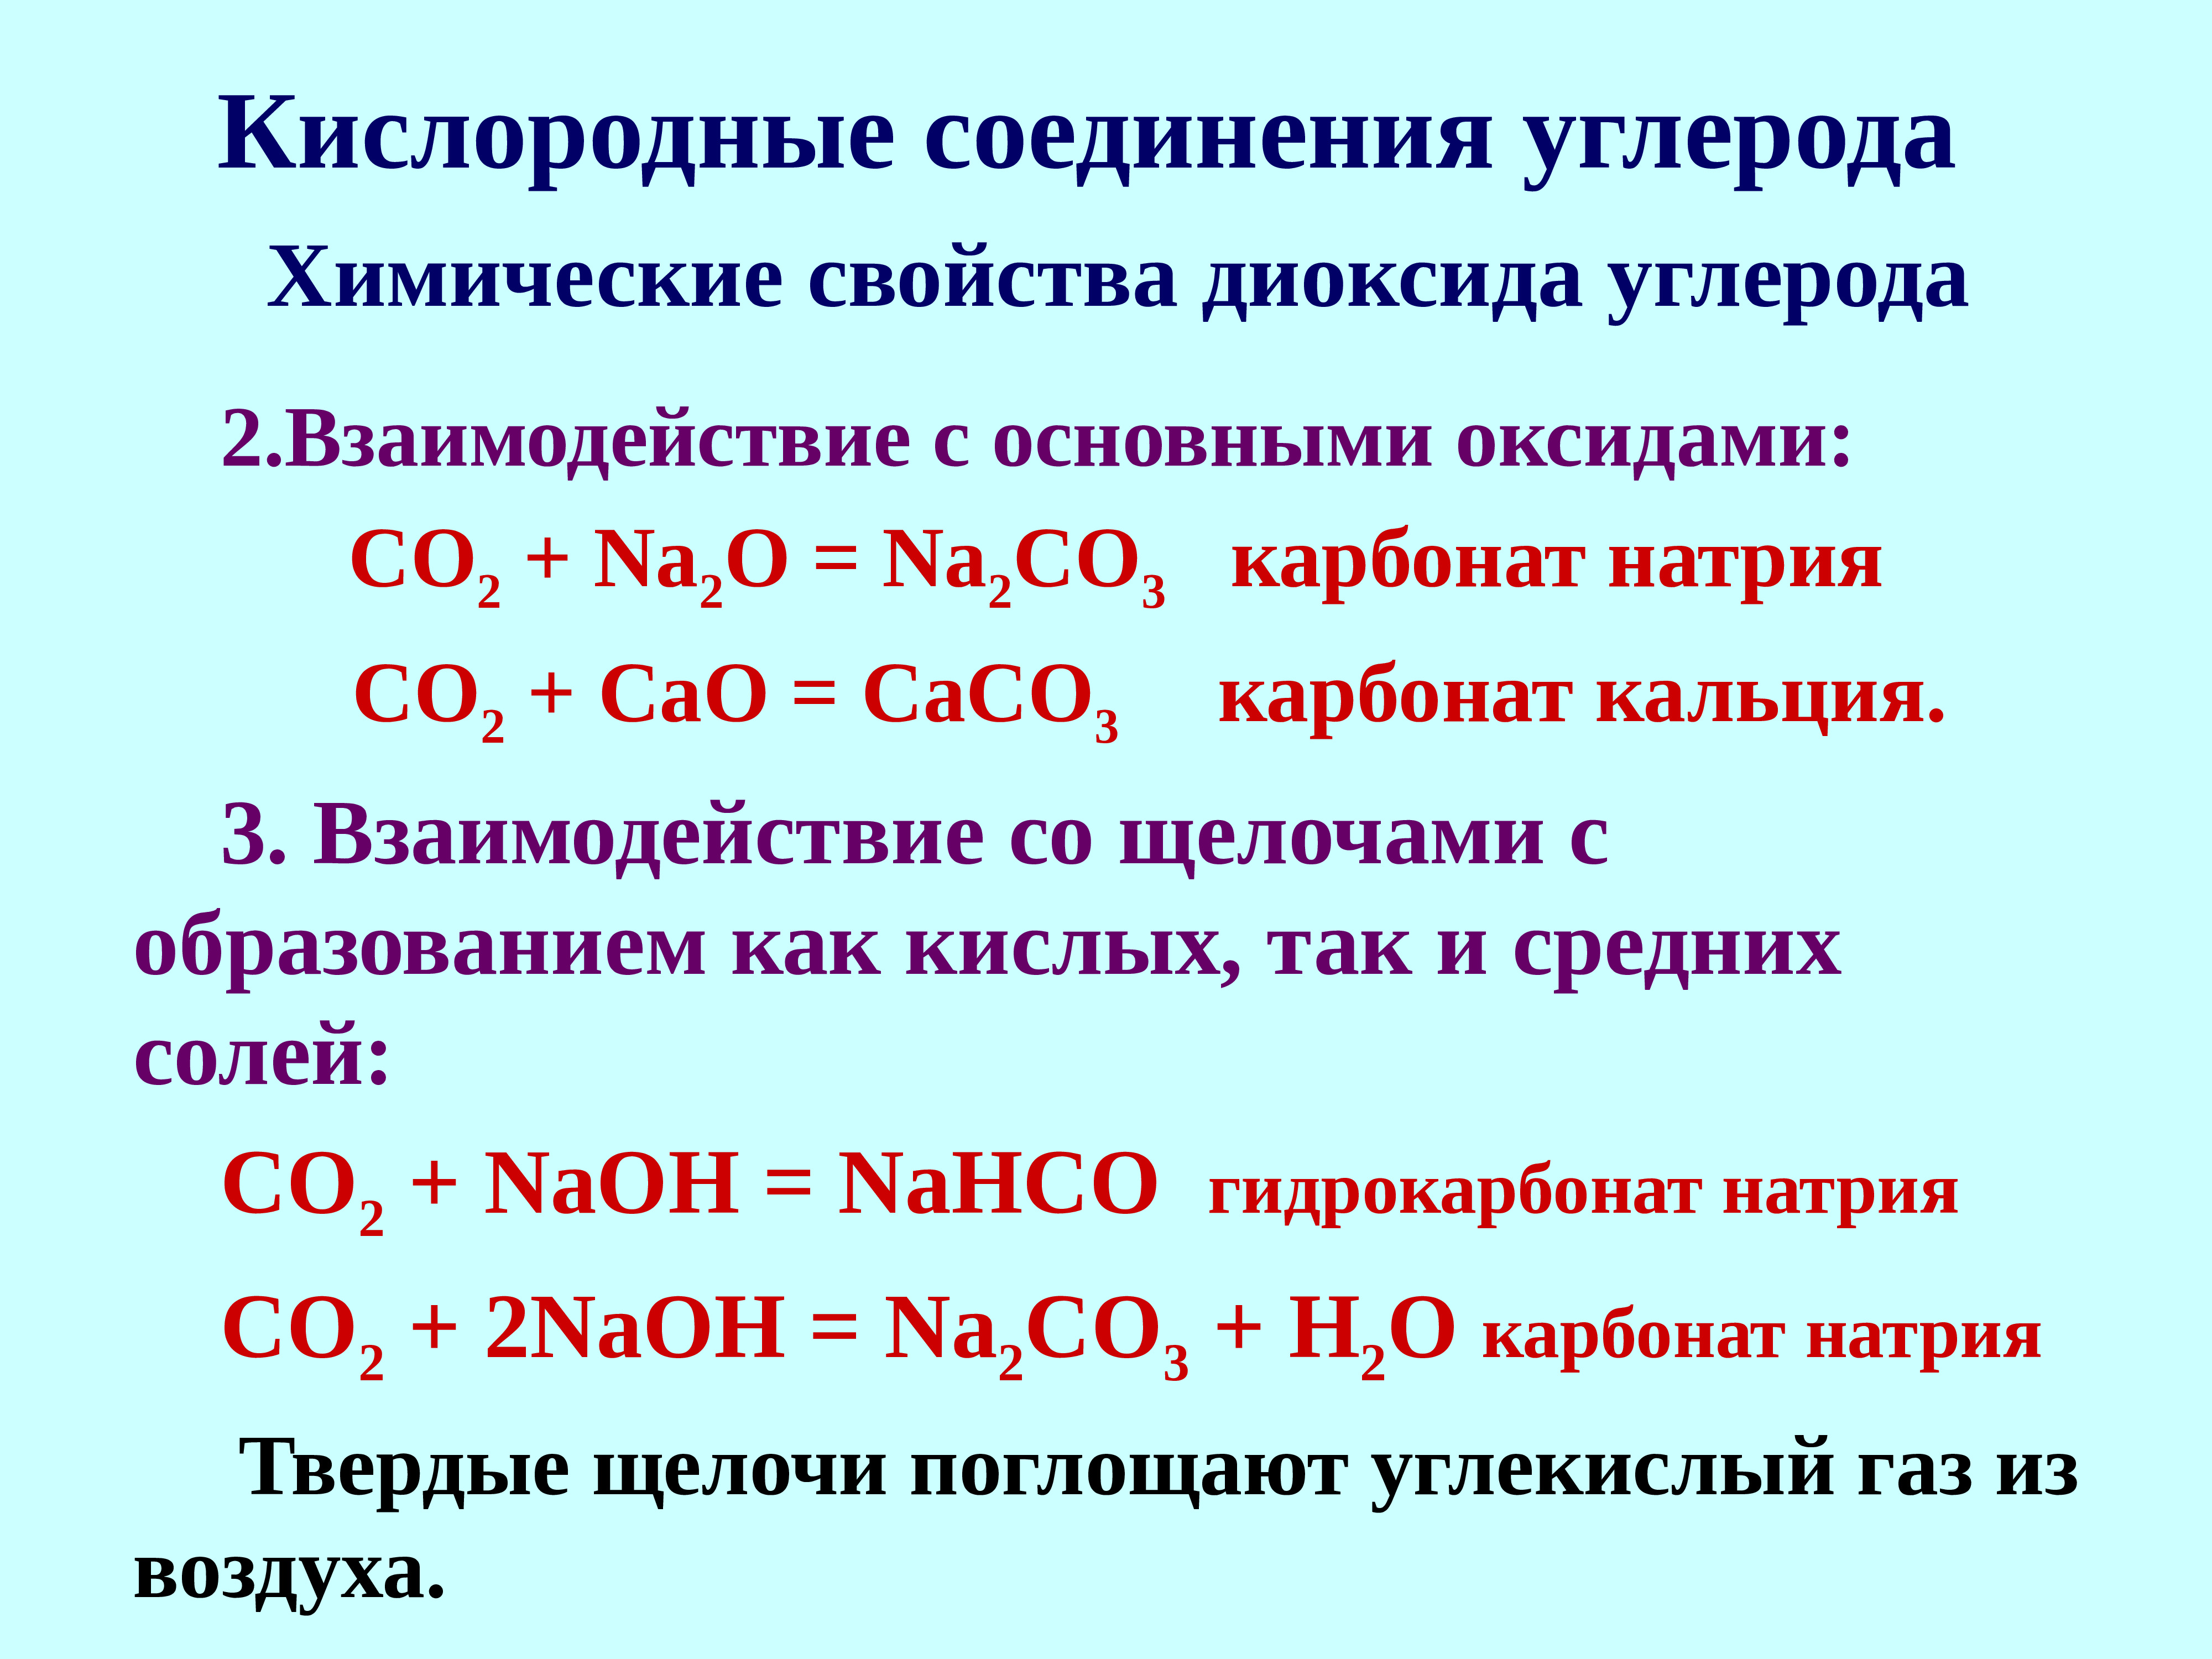 Карбонат натрия какое соединение